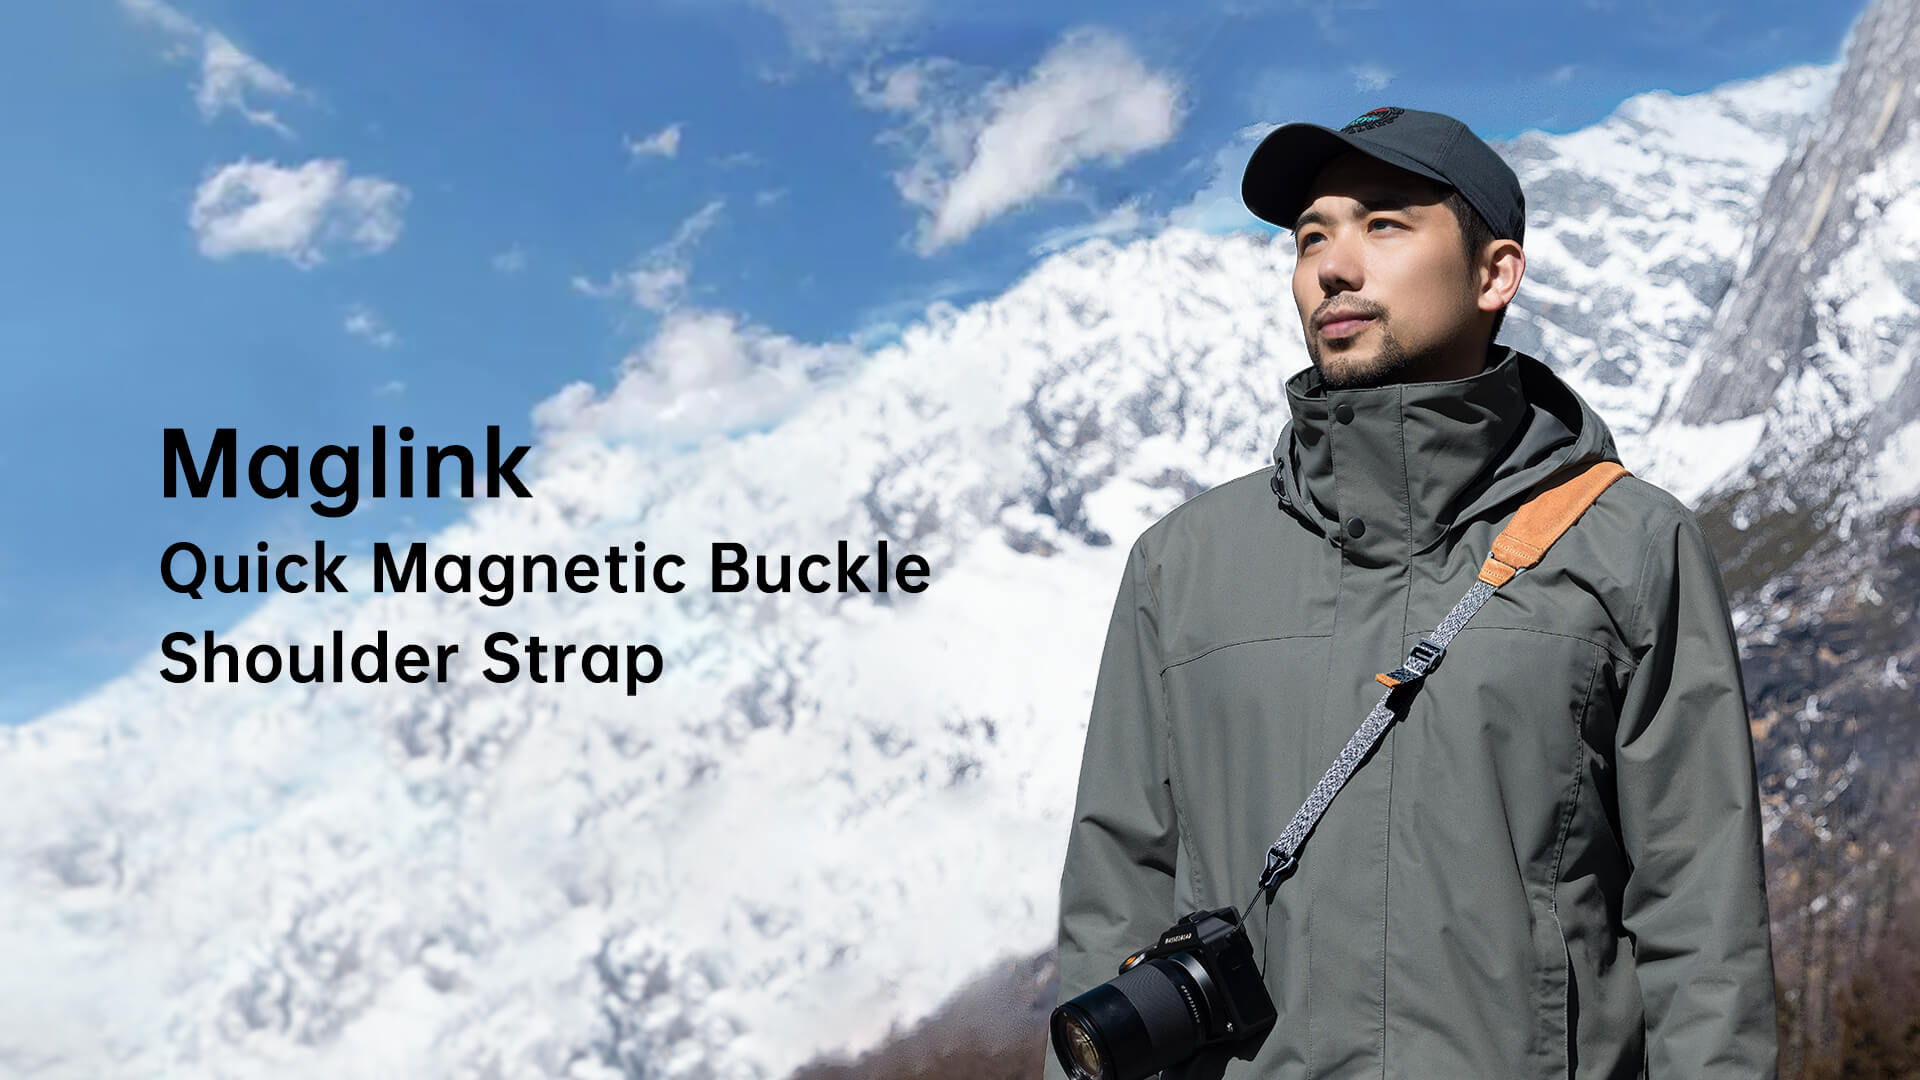 MagLink Quick Magnetic Buckle Shoulder Strap